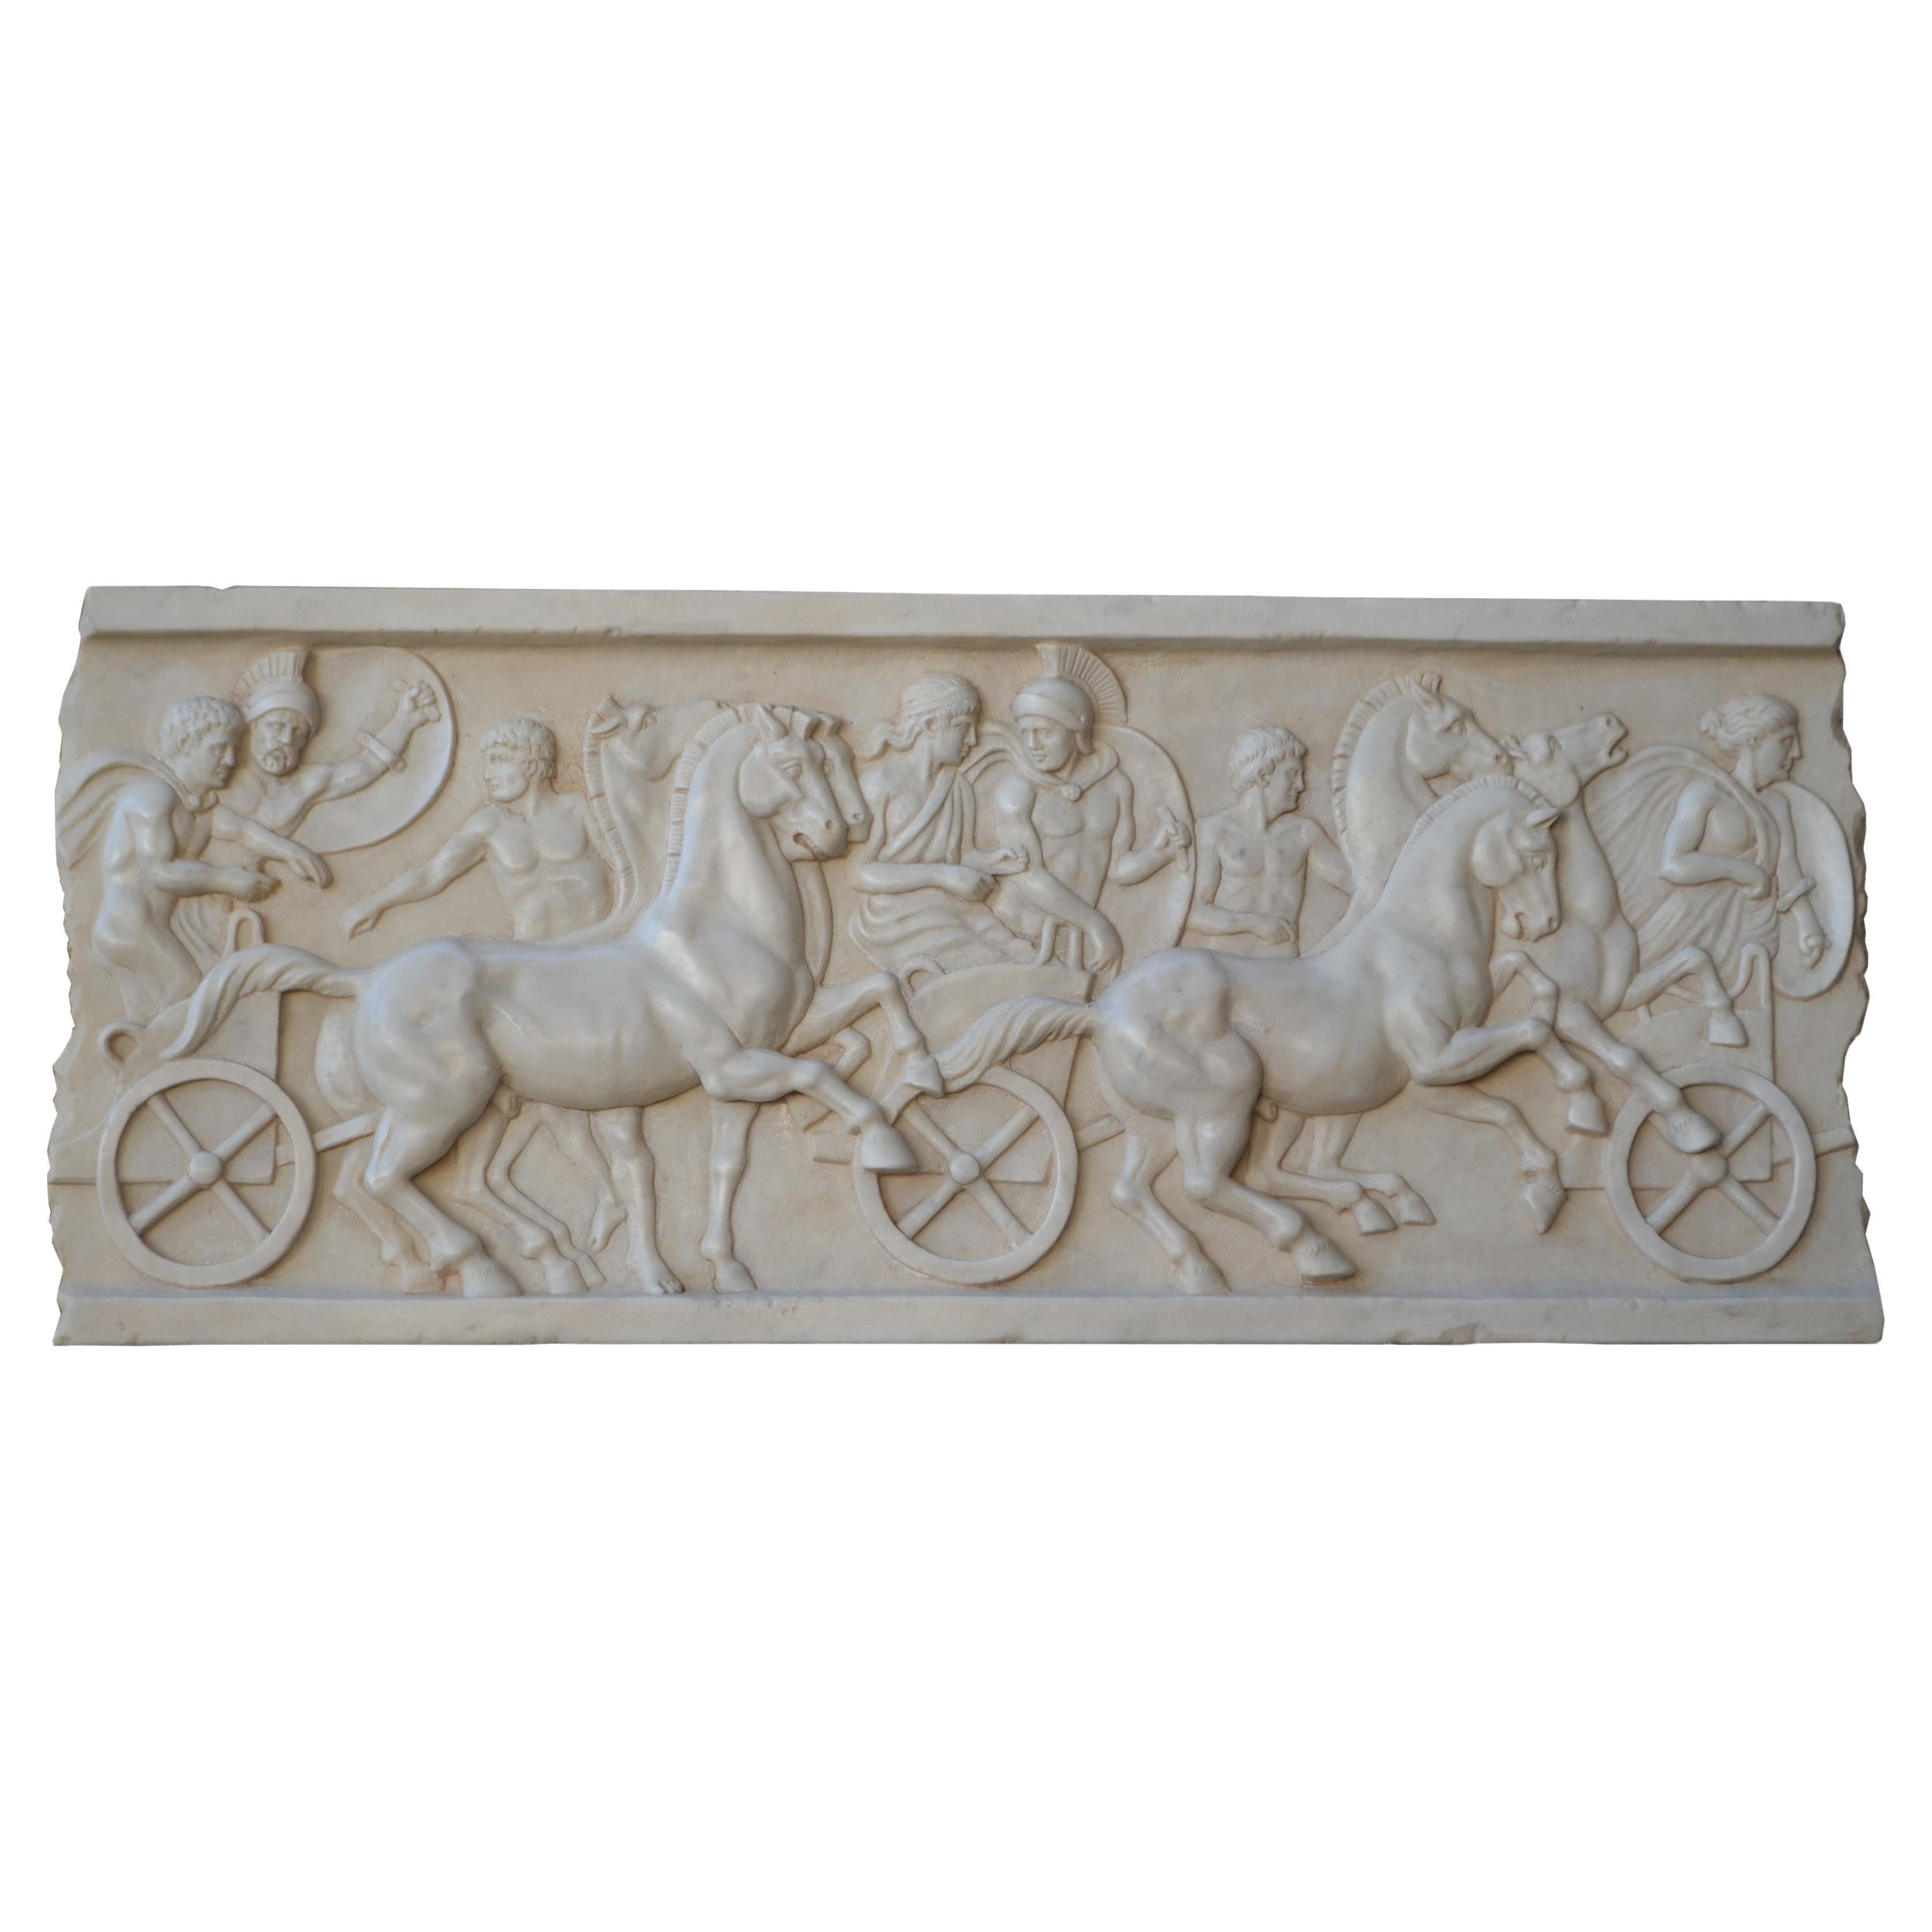 Altorilievo con scena di cavalli e bighe romane scolpito in marmo bianco Carrara For Sale